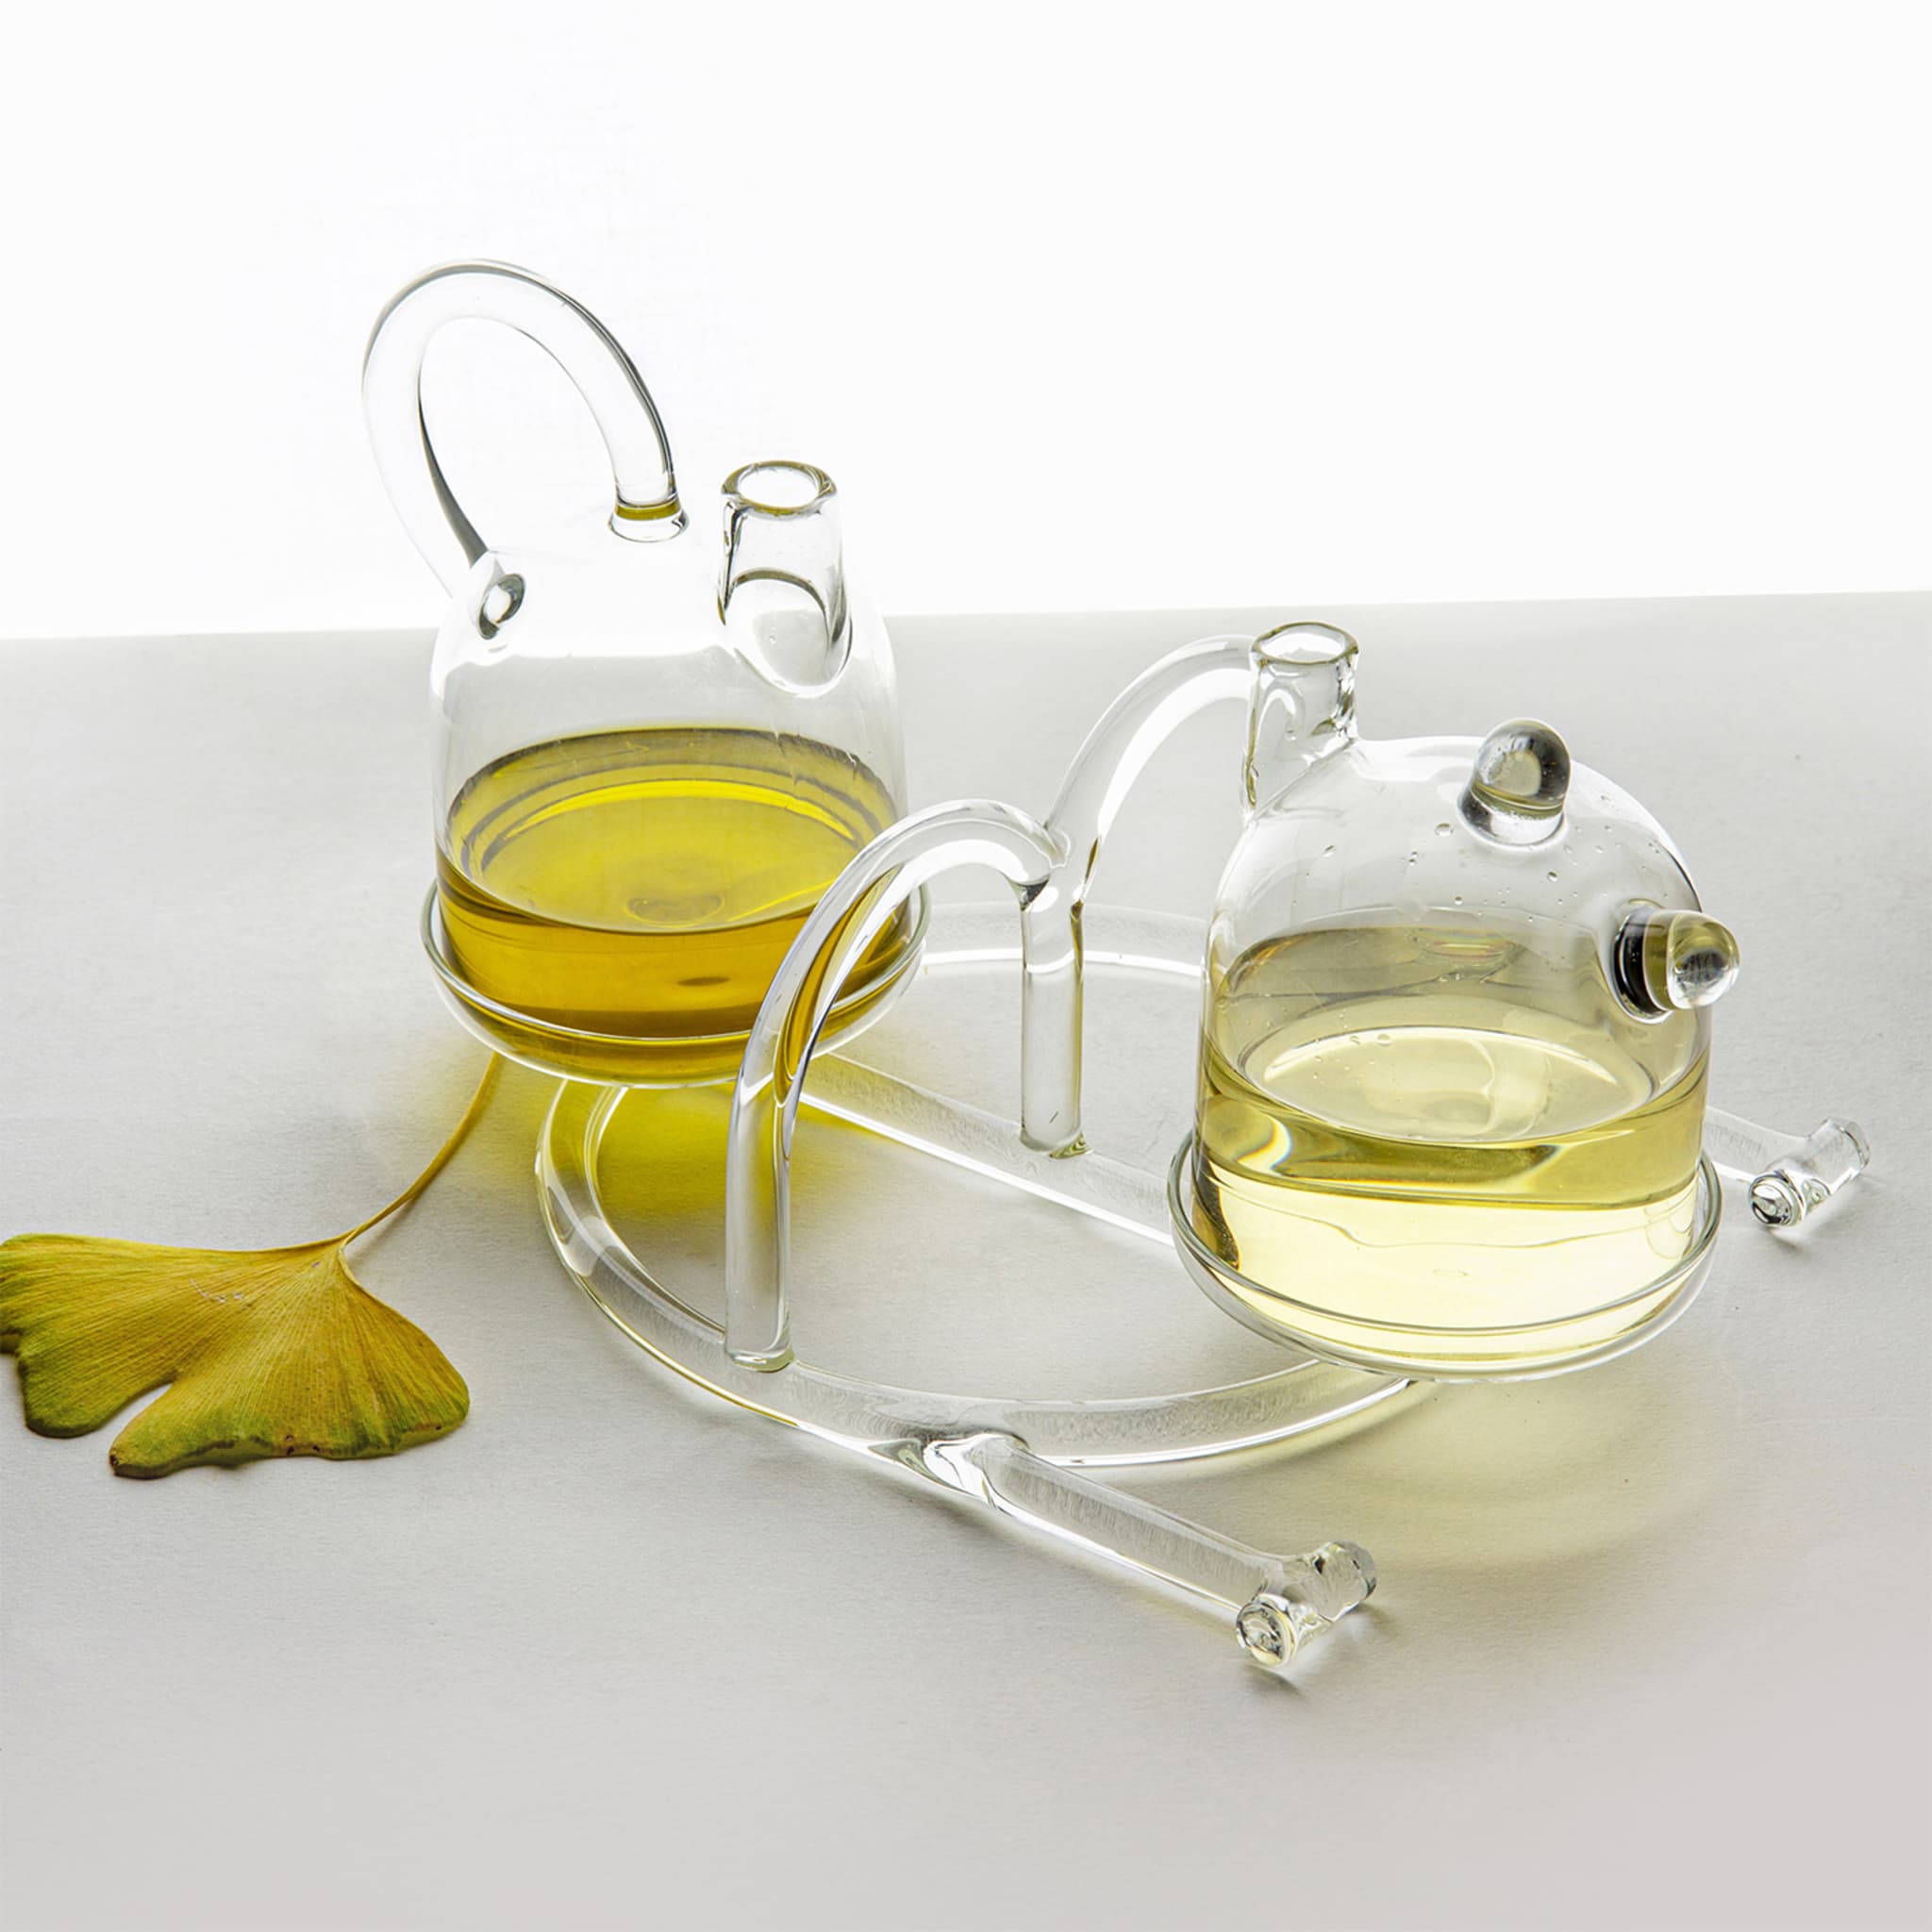 Oil & Vinegar - SiO2 Tableware Glass Collection - Alternative view 1